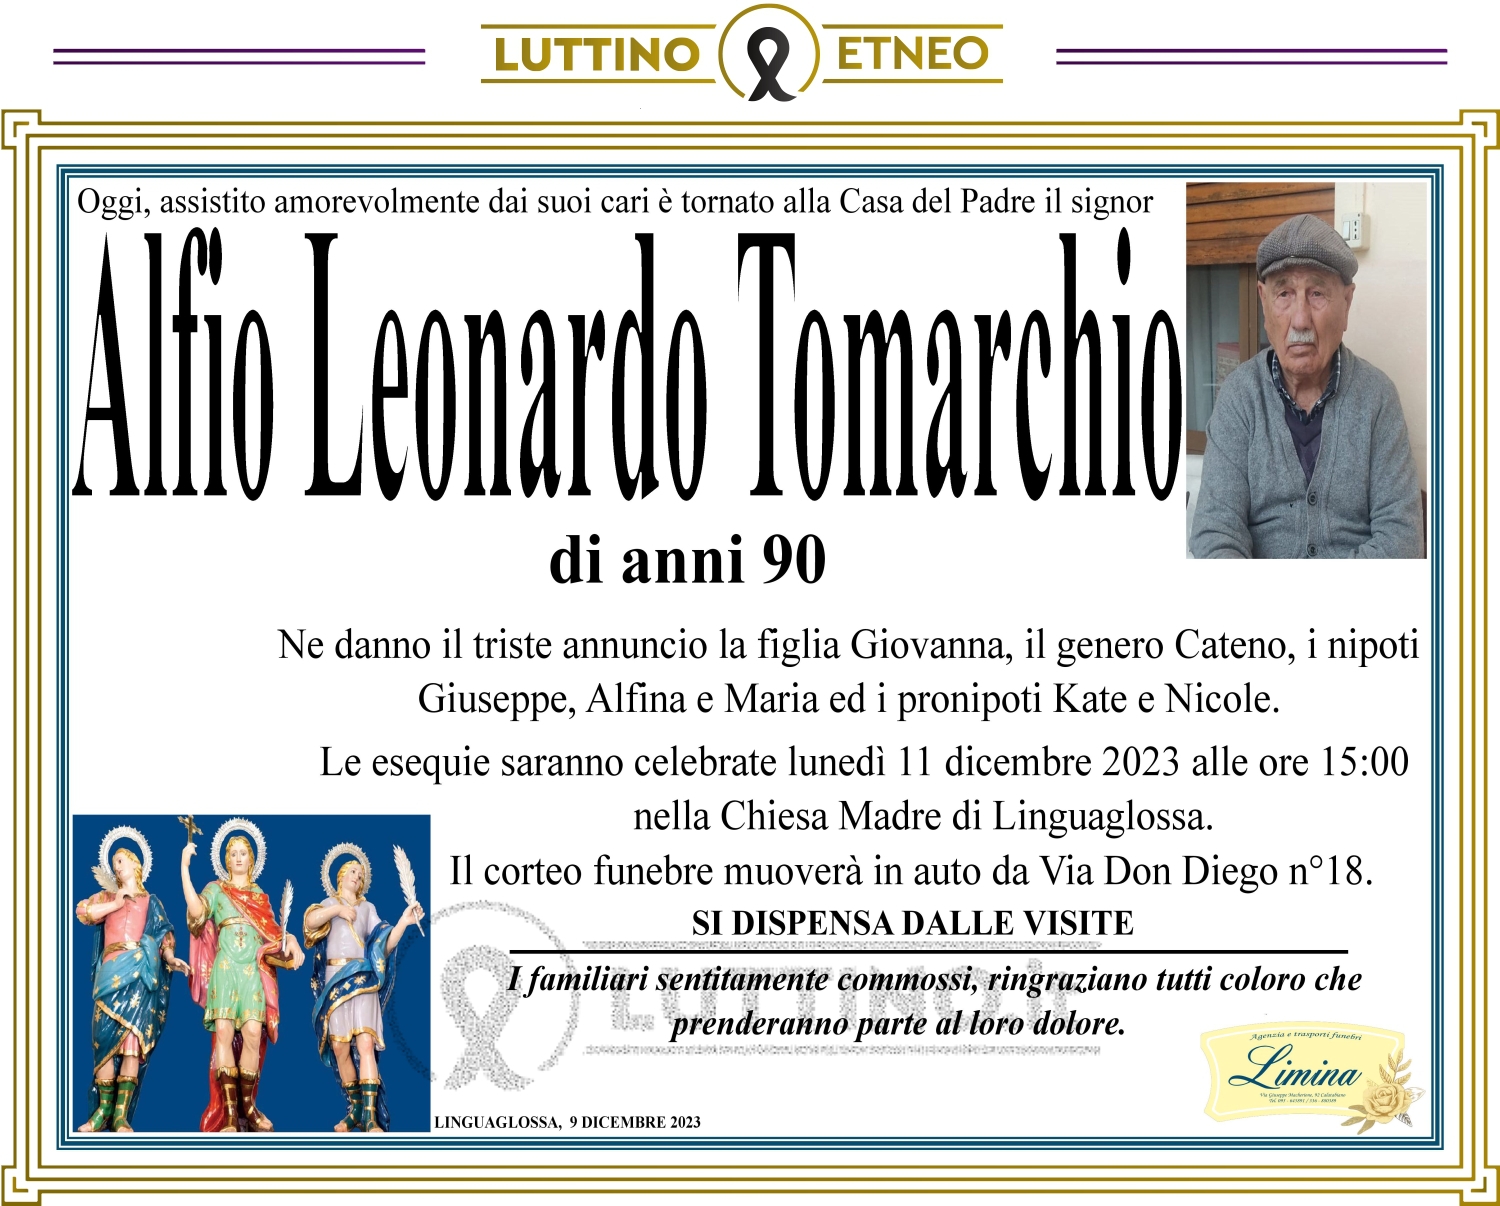 Alfio Leonardo Tomarchio